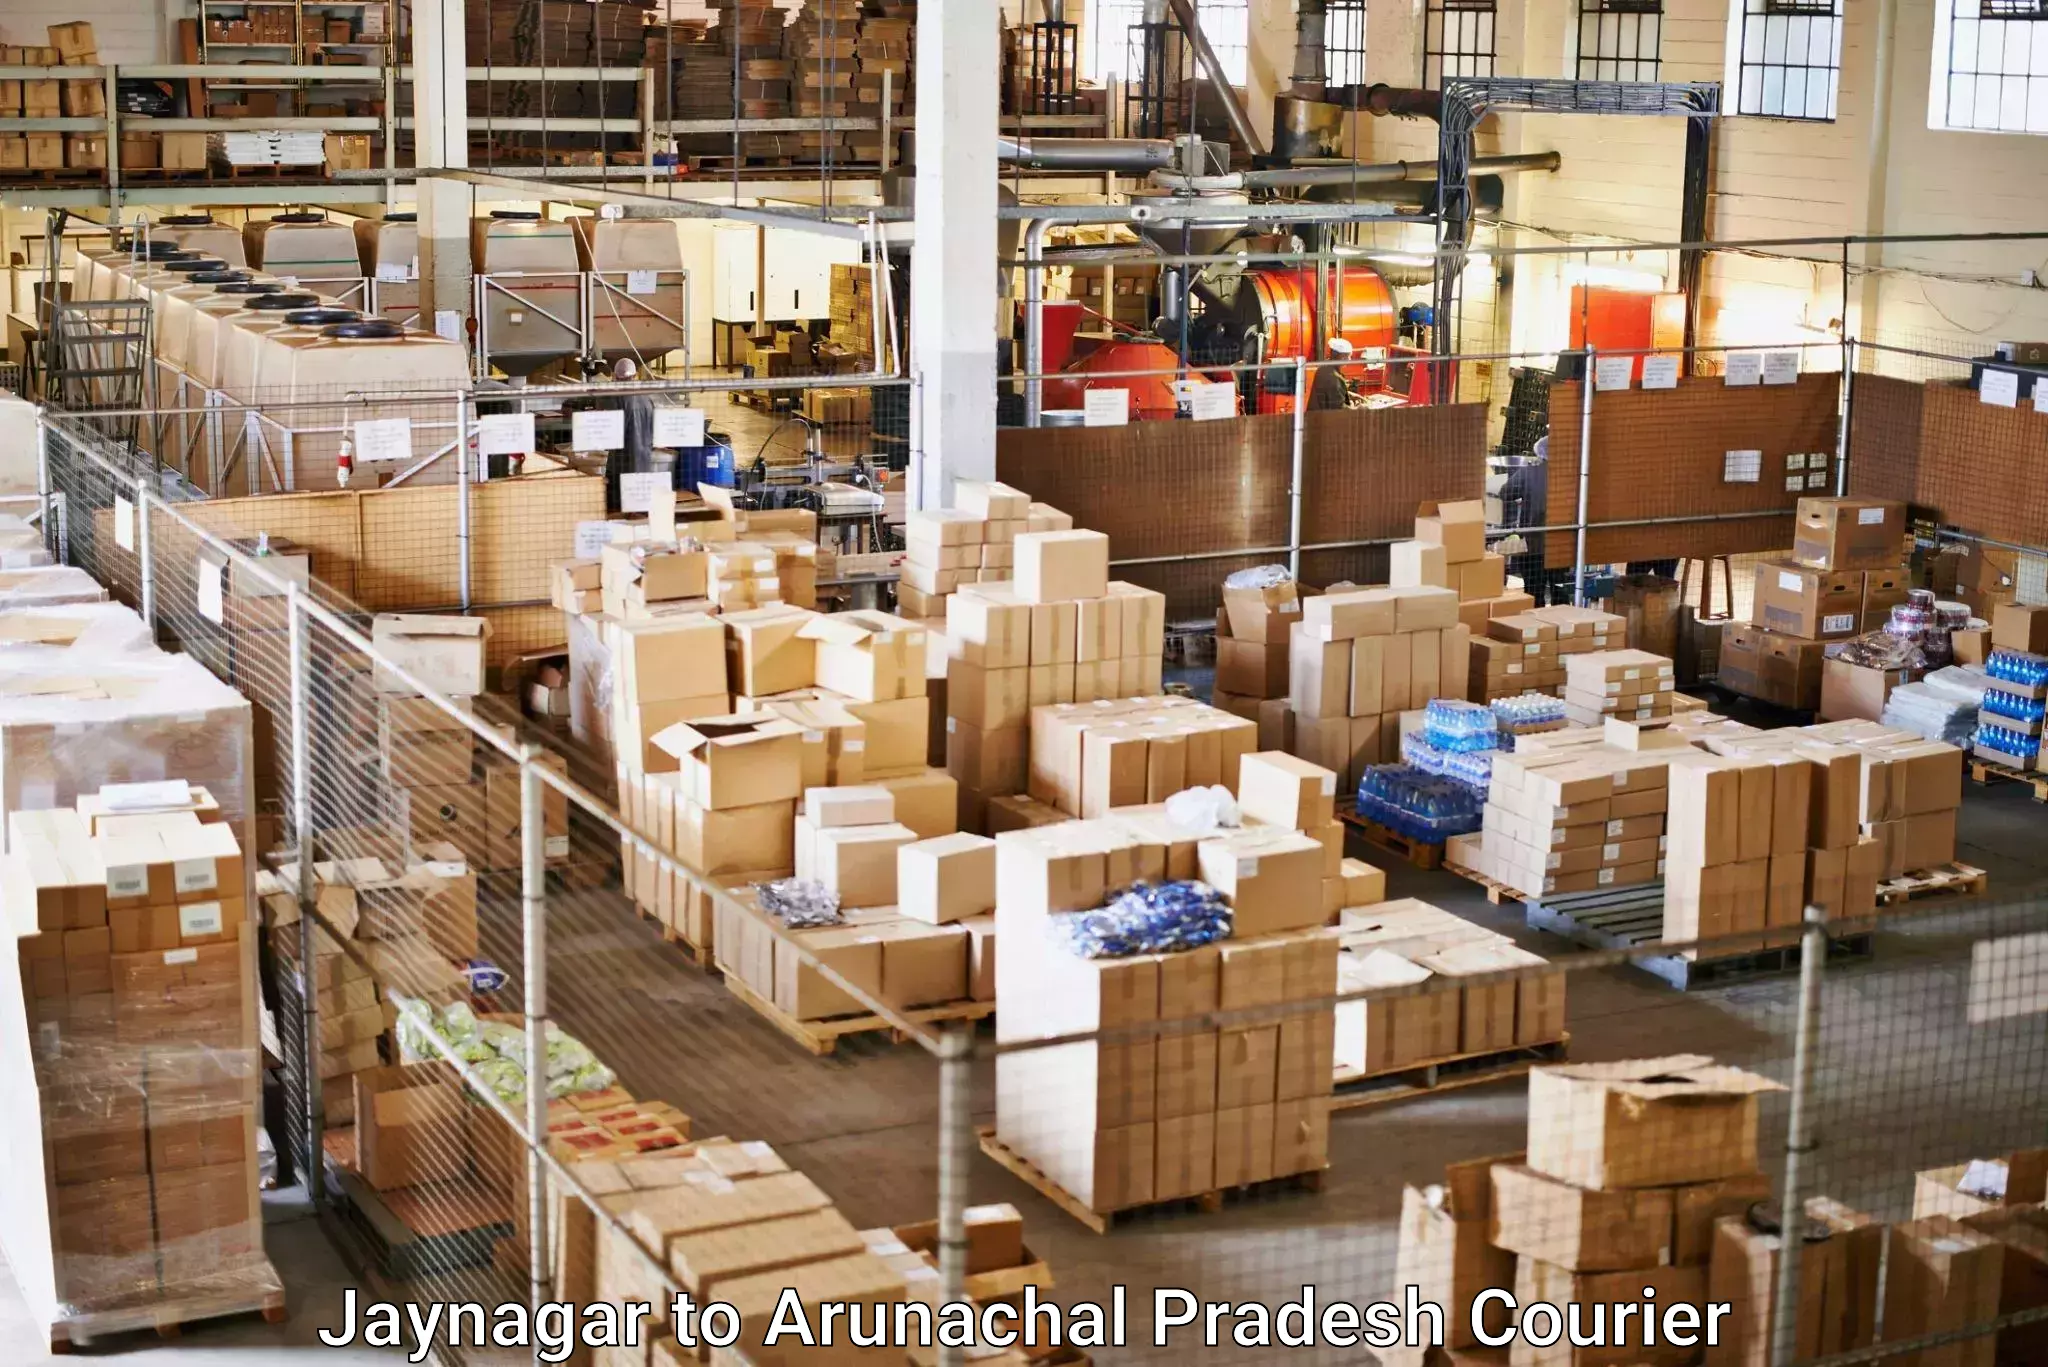 Nationwide parcel services Jaynagar to Arunachal Pradesh